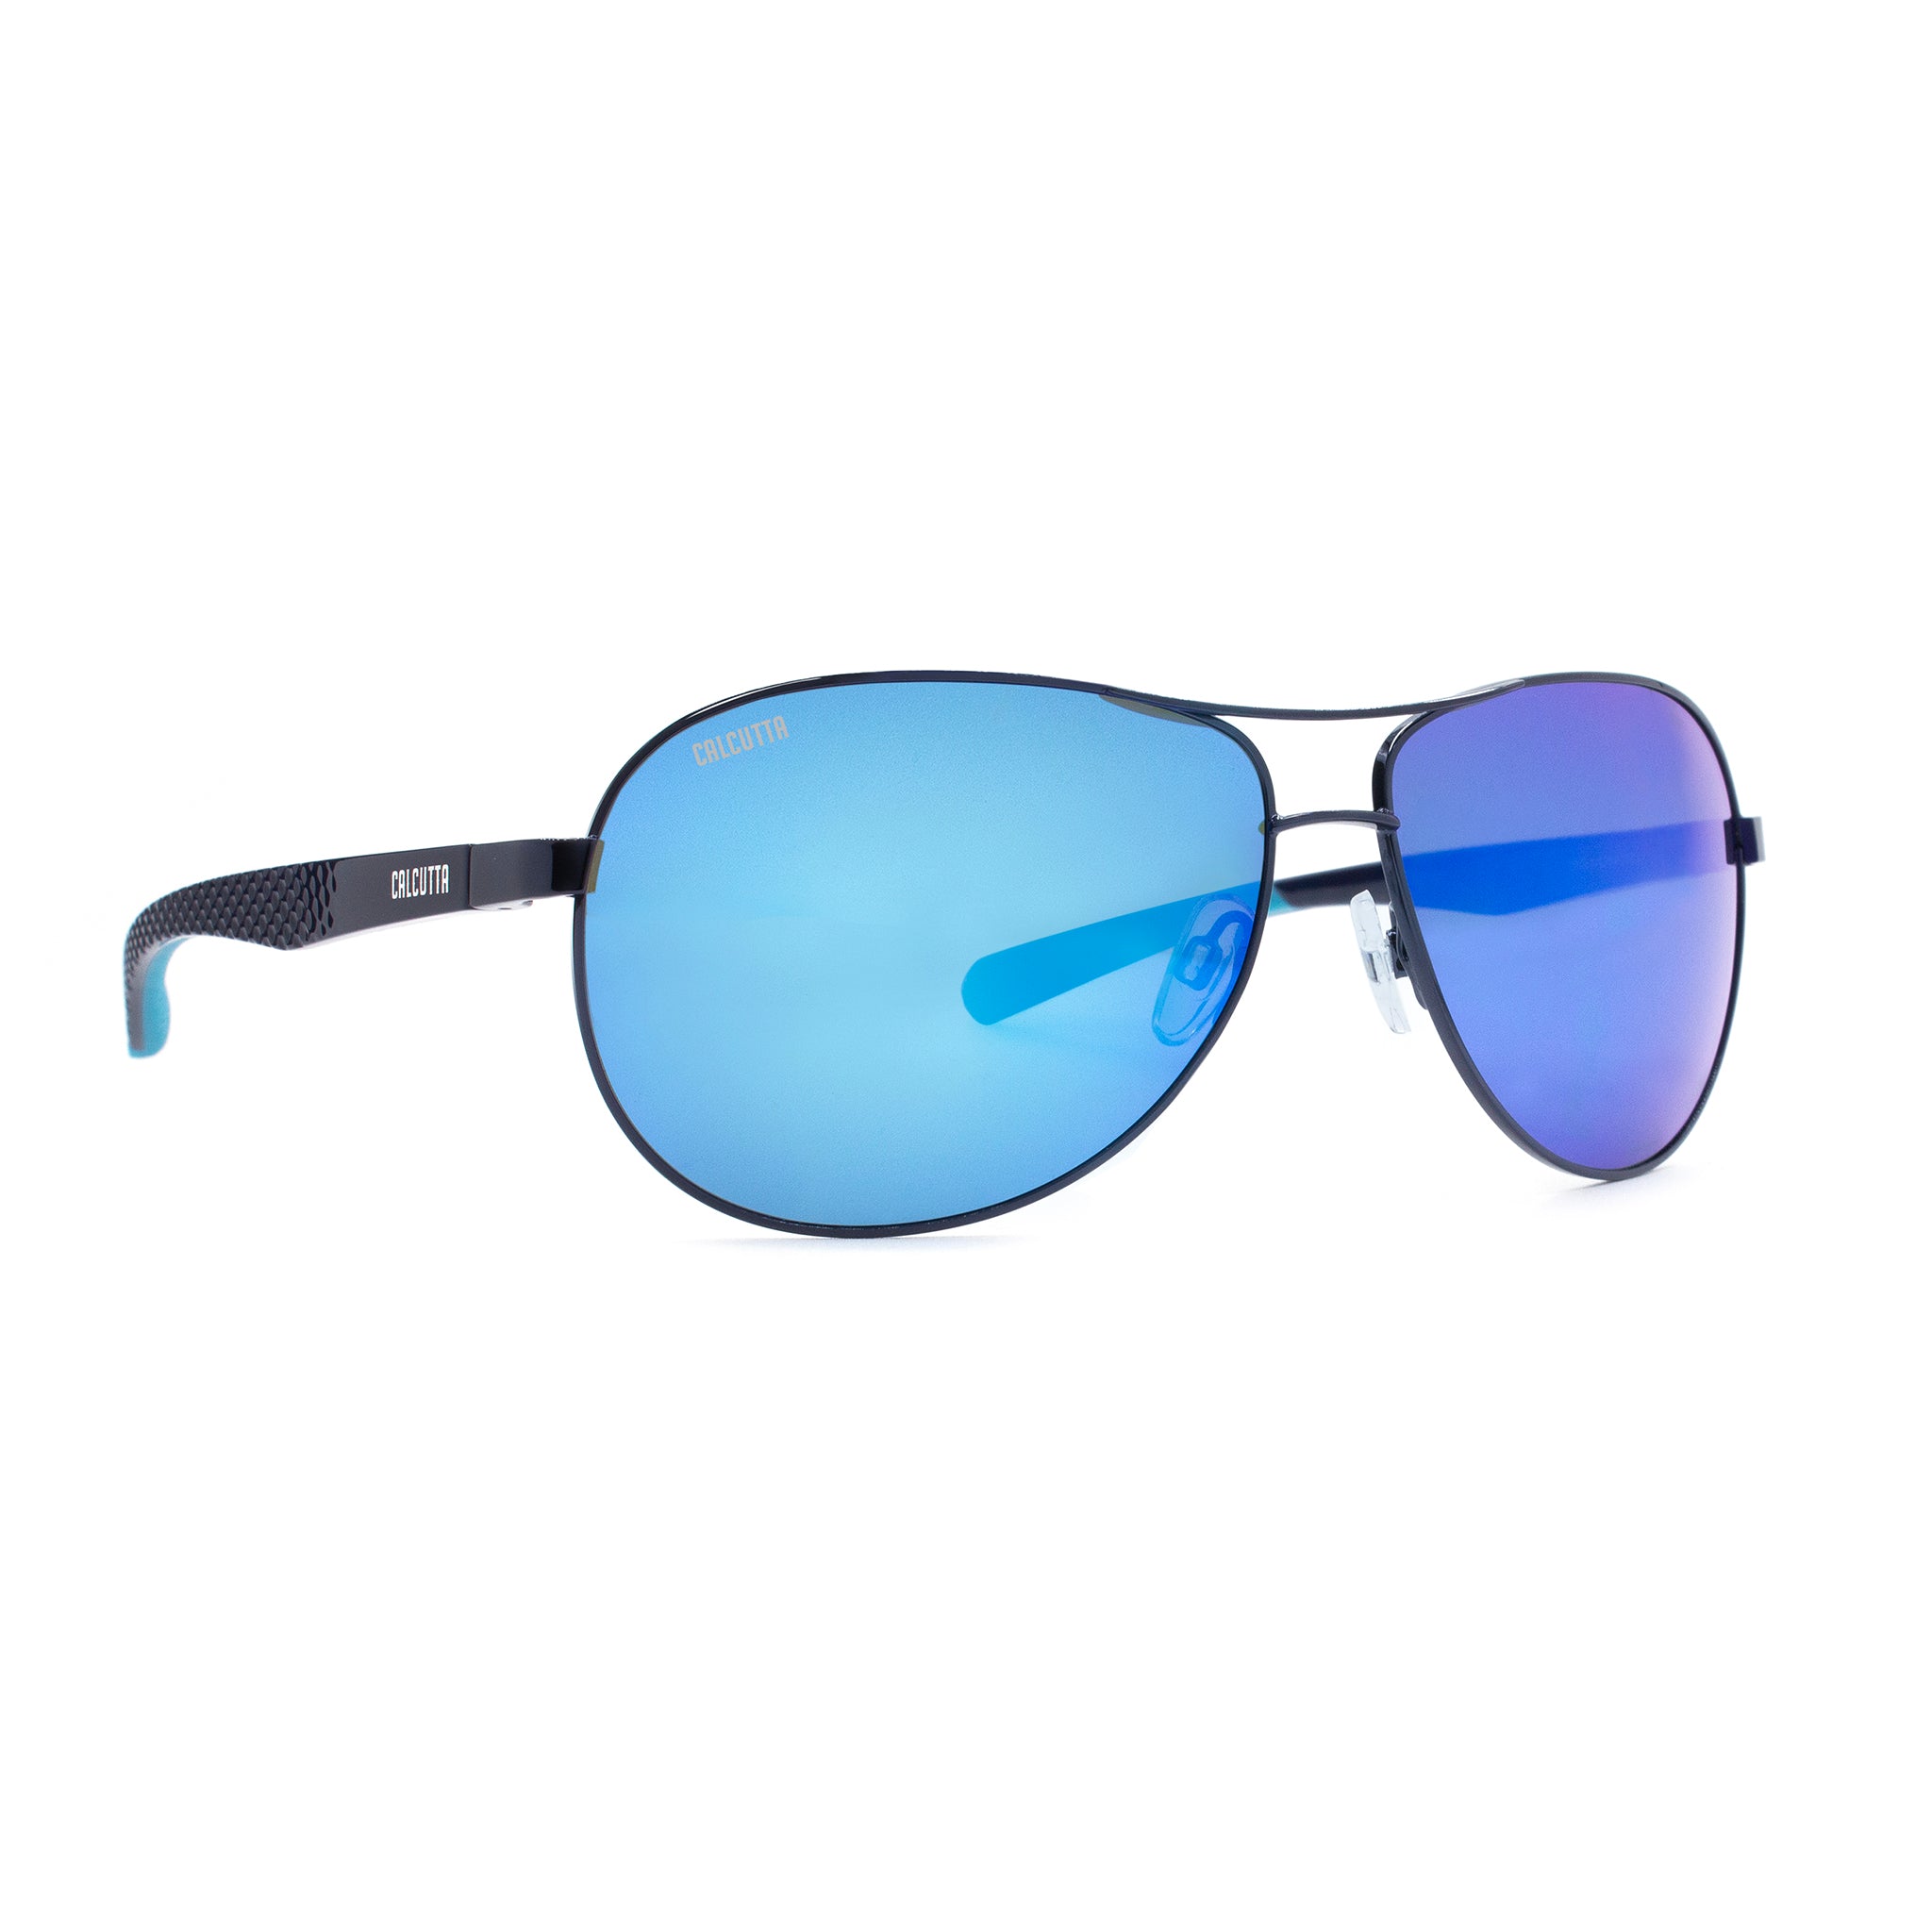 Calcutta Maverick sunglasses blue mirror